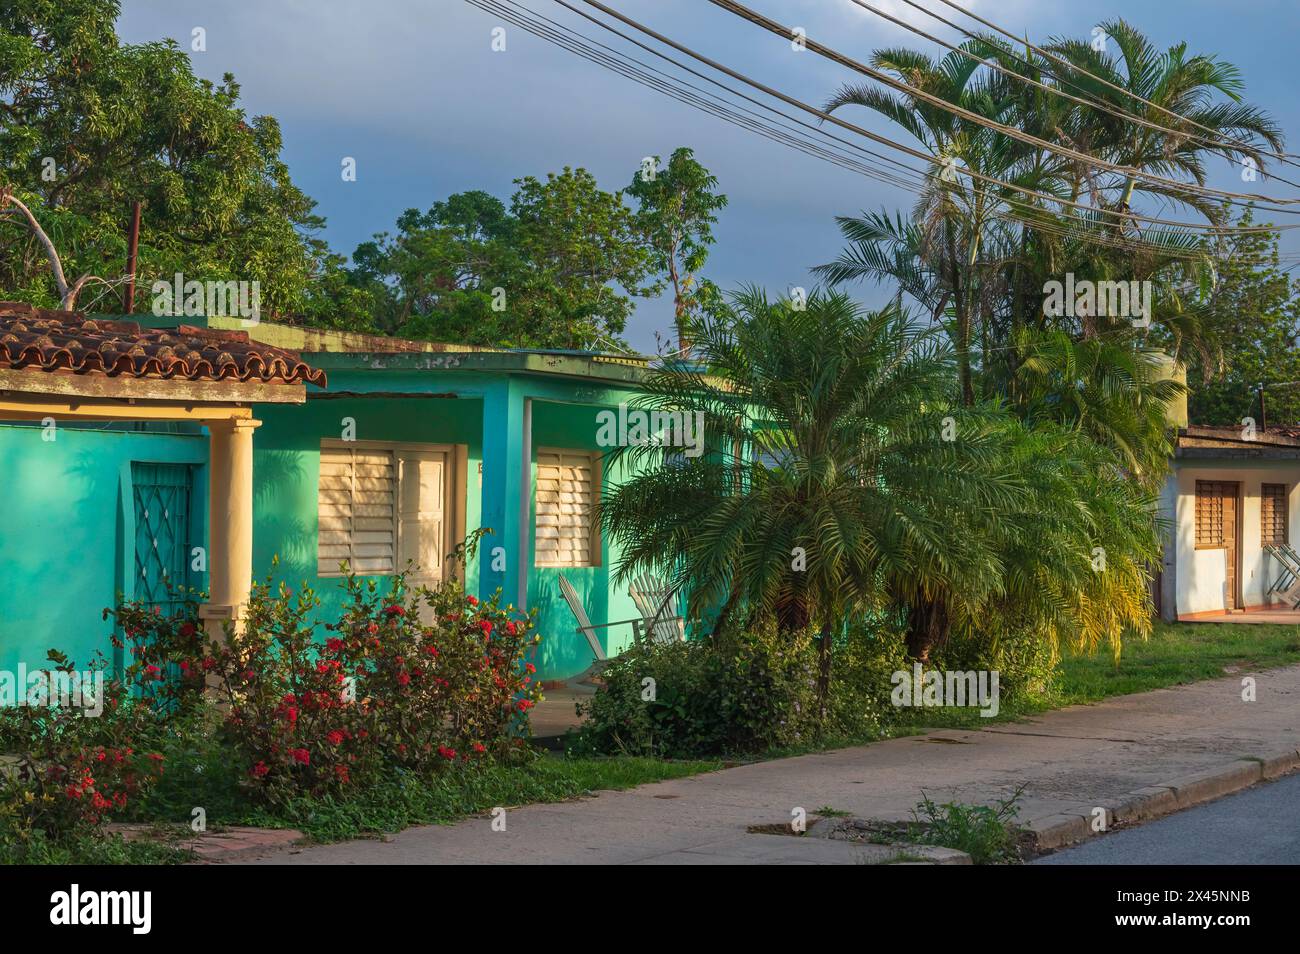 Une vue typique des maisons et des palmiers bordant les ruelles de Vinales, Cuba Banque D'Images